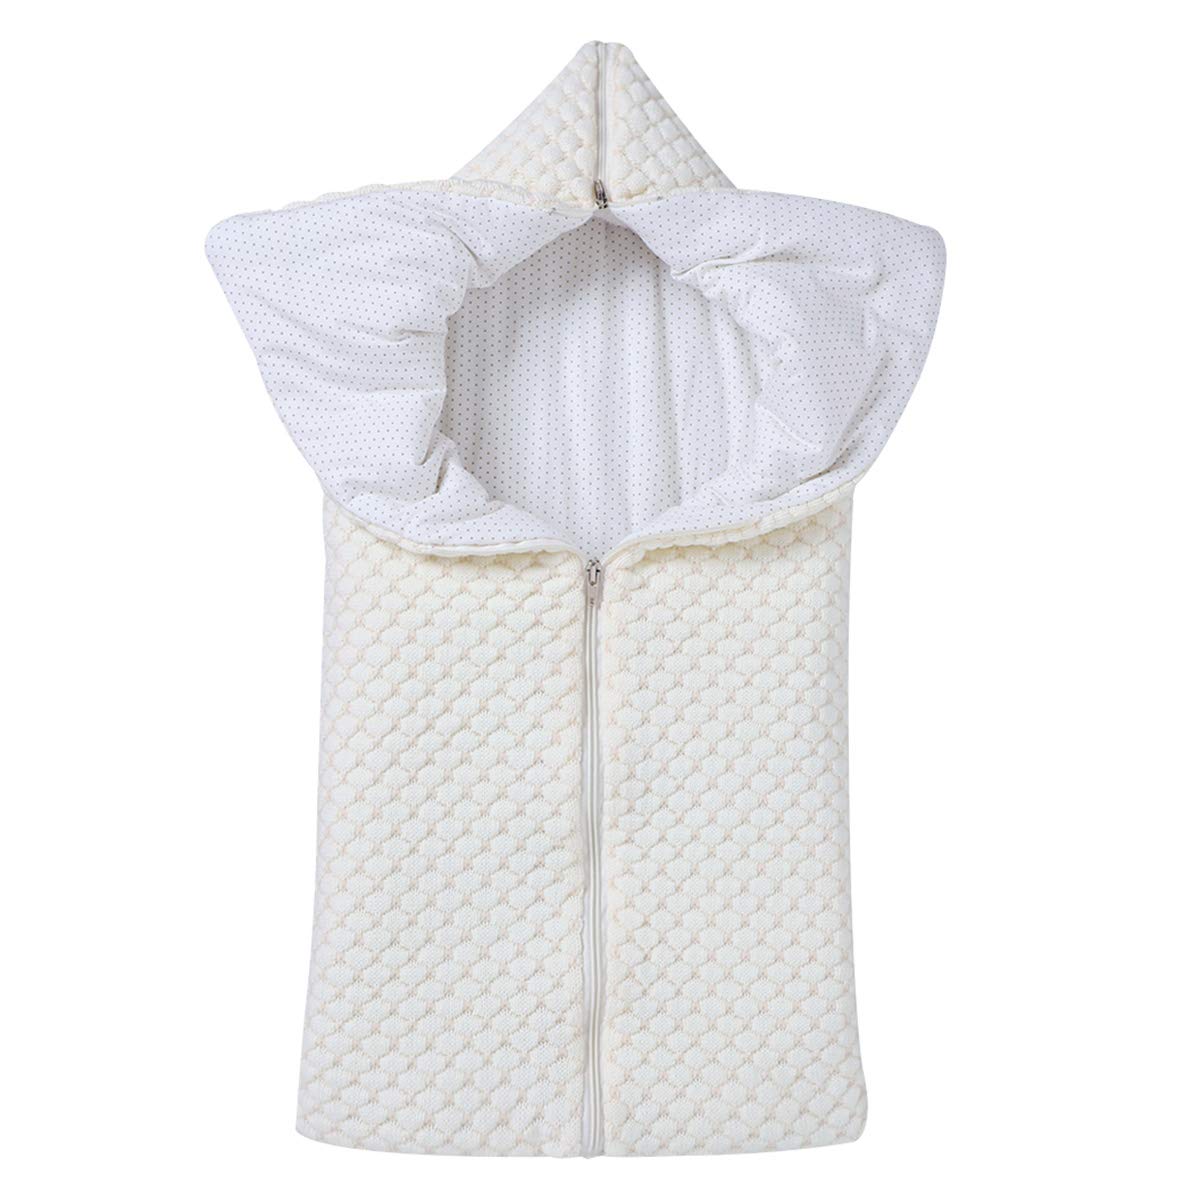 Yuehuam Schlafsack für Kinder mit Reißverschluss, dick, warm, einfarbig, mit Kapuze, multifunktionaler Kinderwagen, für Jungen 0-12 Monate